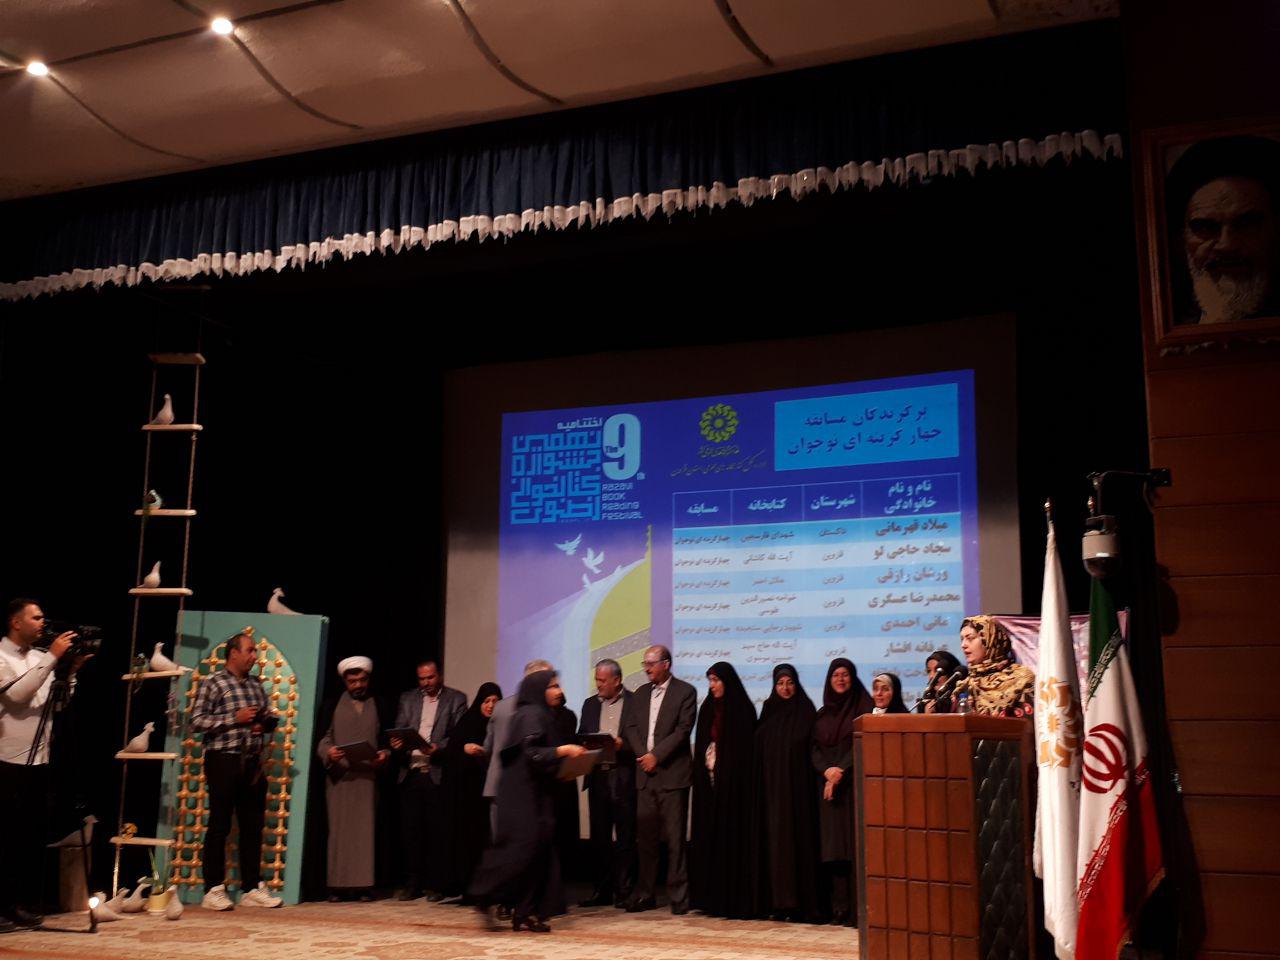 تقدیر از برگزیده های جشنواره کتاب خوانی رضوی در قزوین